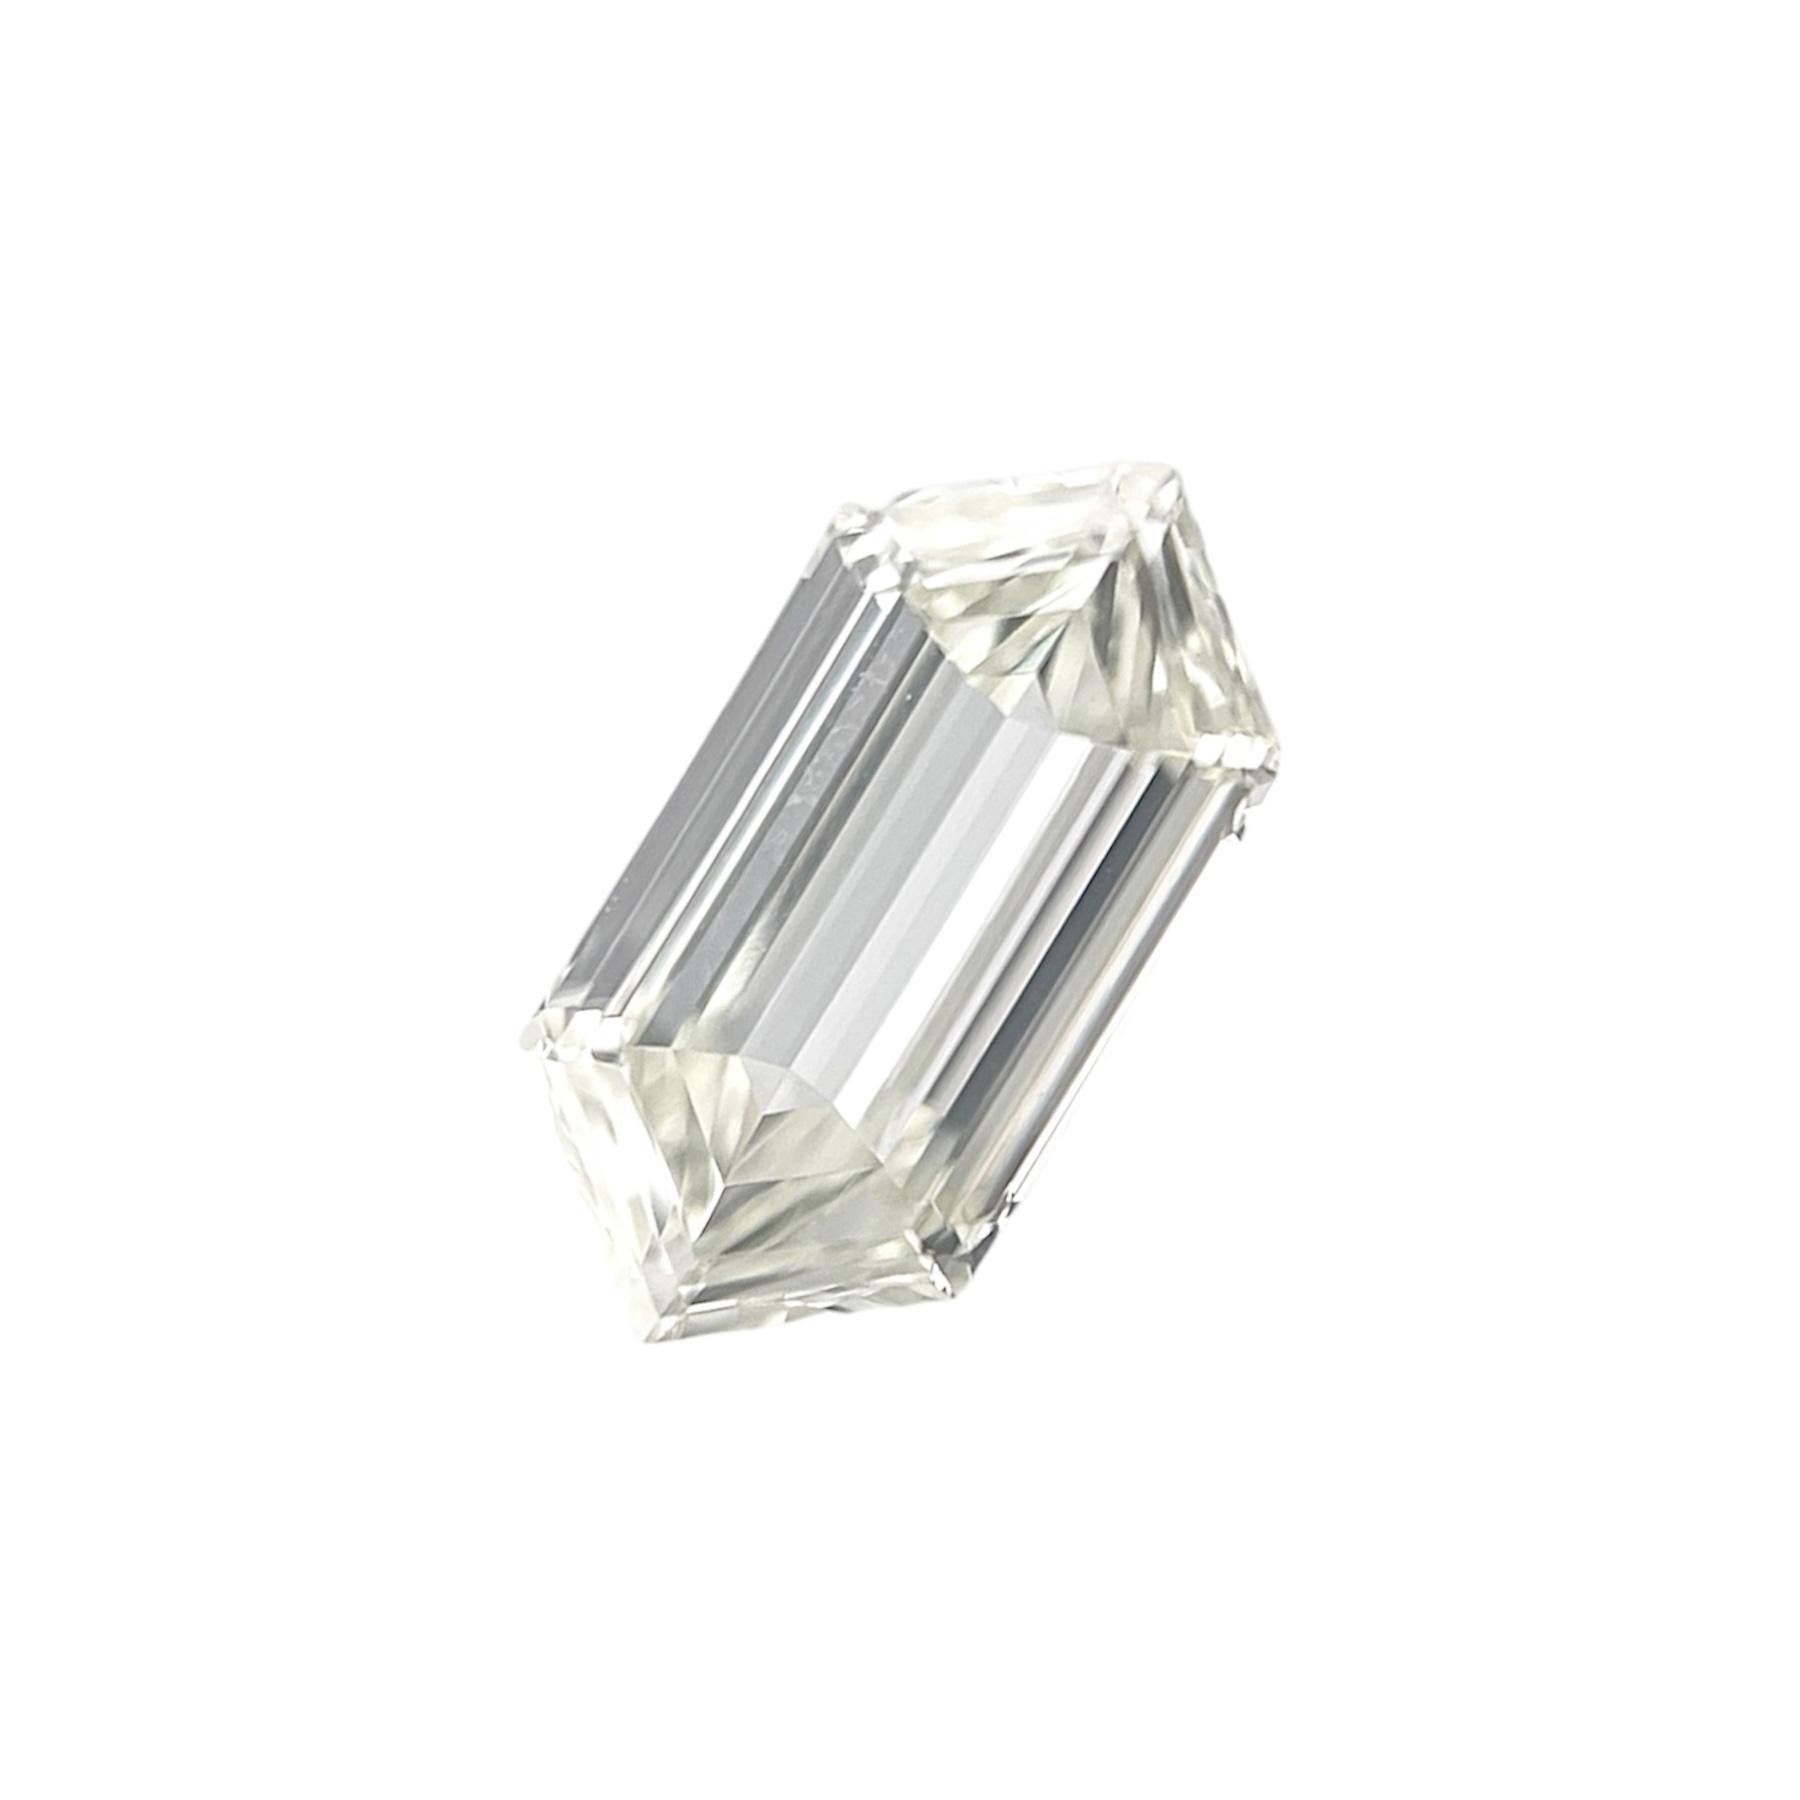 Hexagon Cut GIA Certified 0.67 Carat Hexagonal Diamond L-VS2 GIA Certified Natural Diamond For Sale